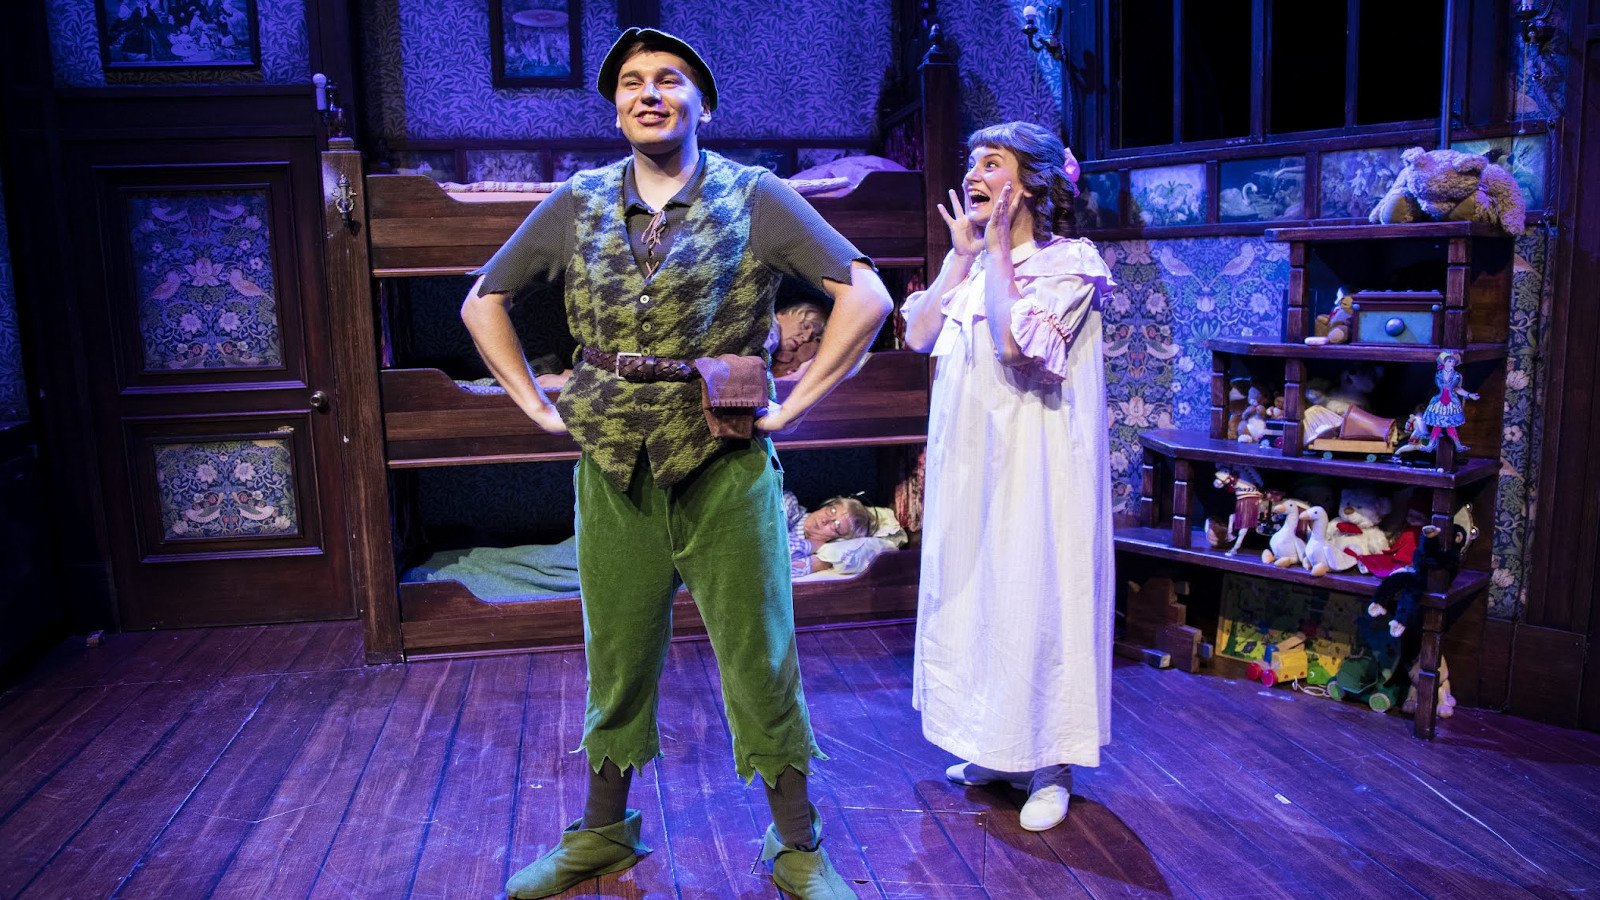 Kotkan teatterin Peter Pan'n roolissa on Jonde, jota näyttelee Kalle Kurikkala ja Eeva Hautala on Sanna, joka esittää Wendy Darlingia.